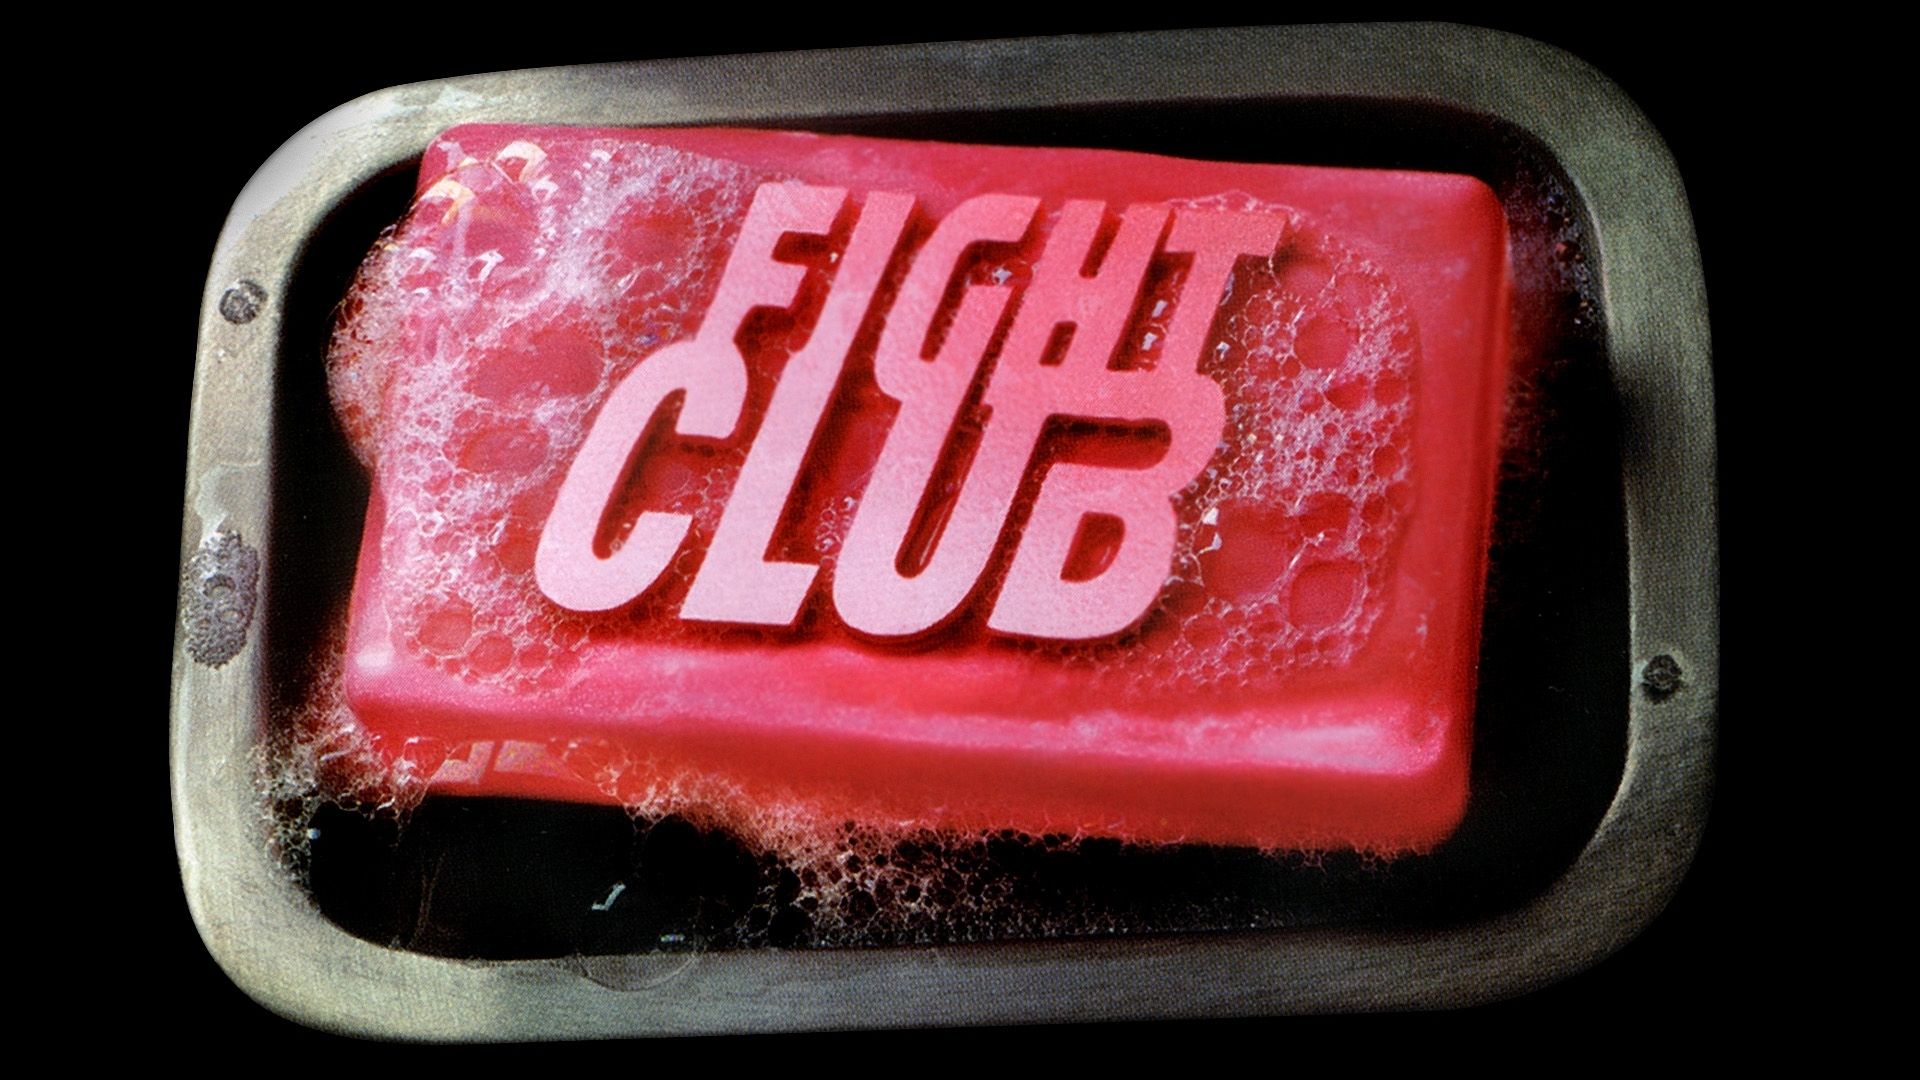 Το φαινόμενο Fight Club: 30 σελίδες γραμμένες σε συνεργείο φορτηγών εξελίχθηκαν σε μια από τις κορυφαίες ταινίες